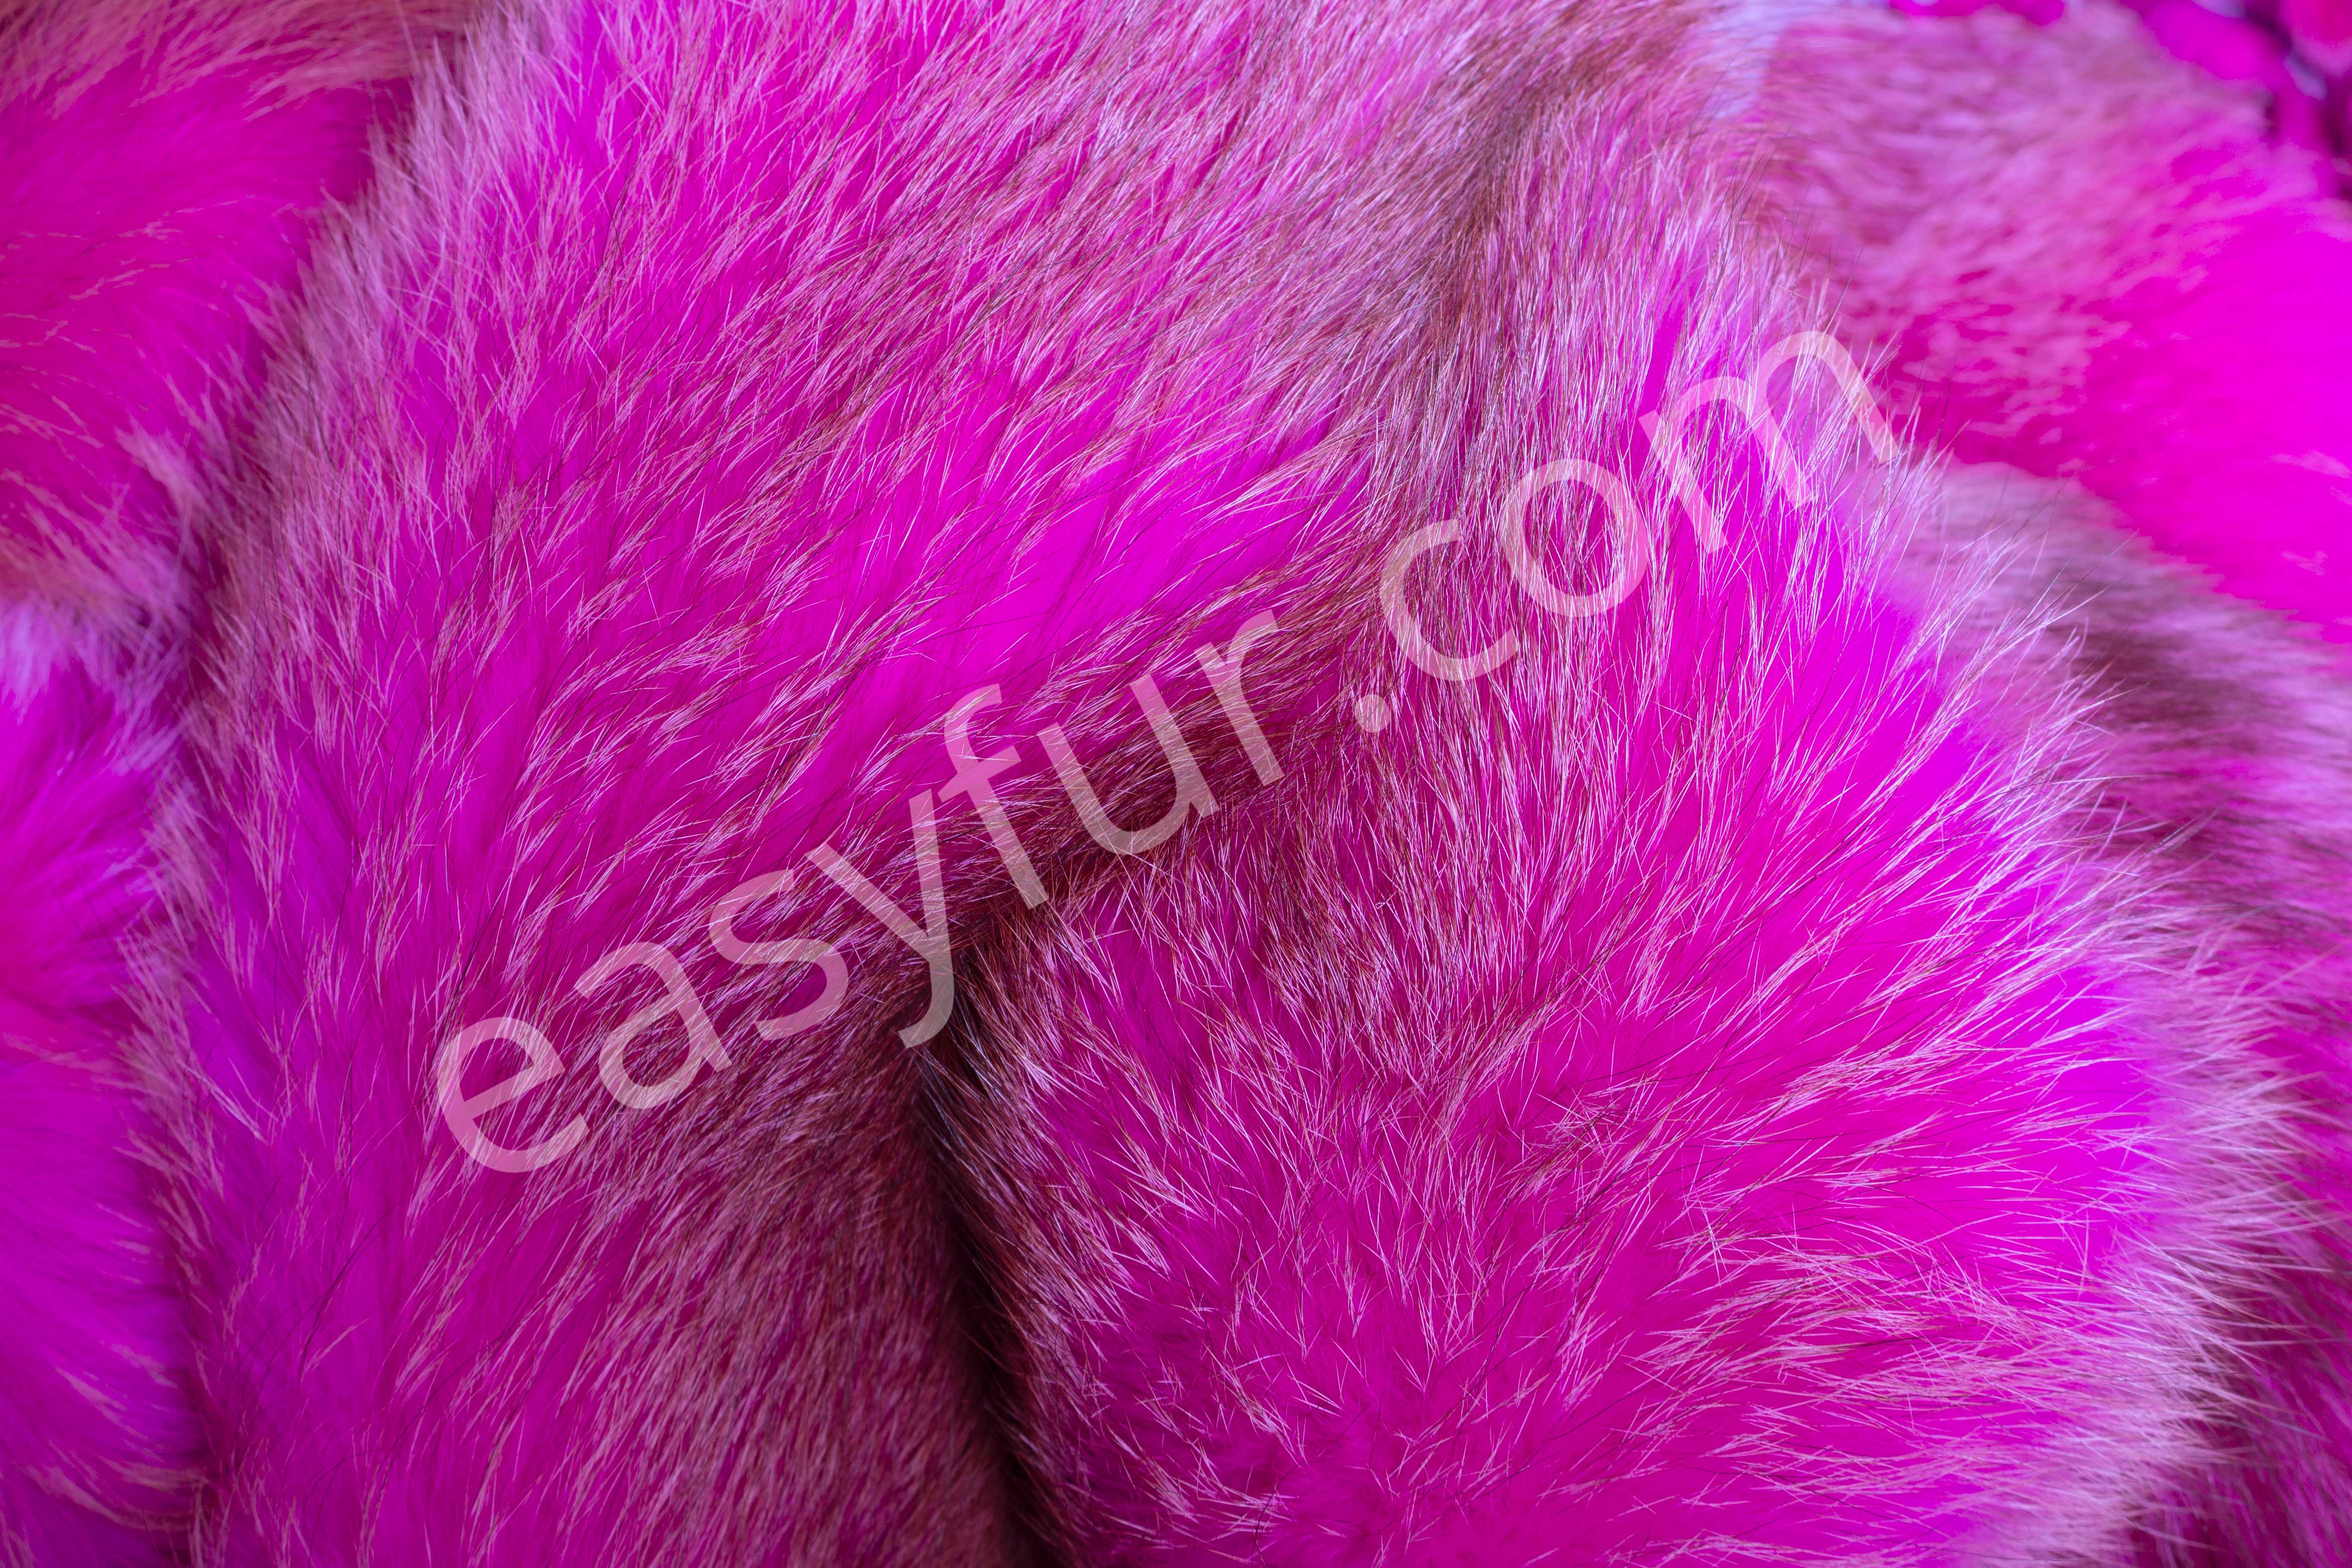 Europaen Red Fox Skins in Pink